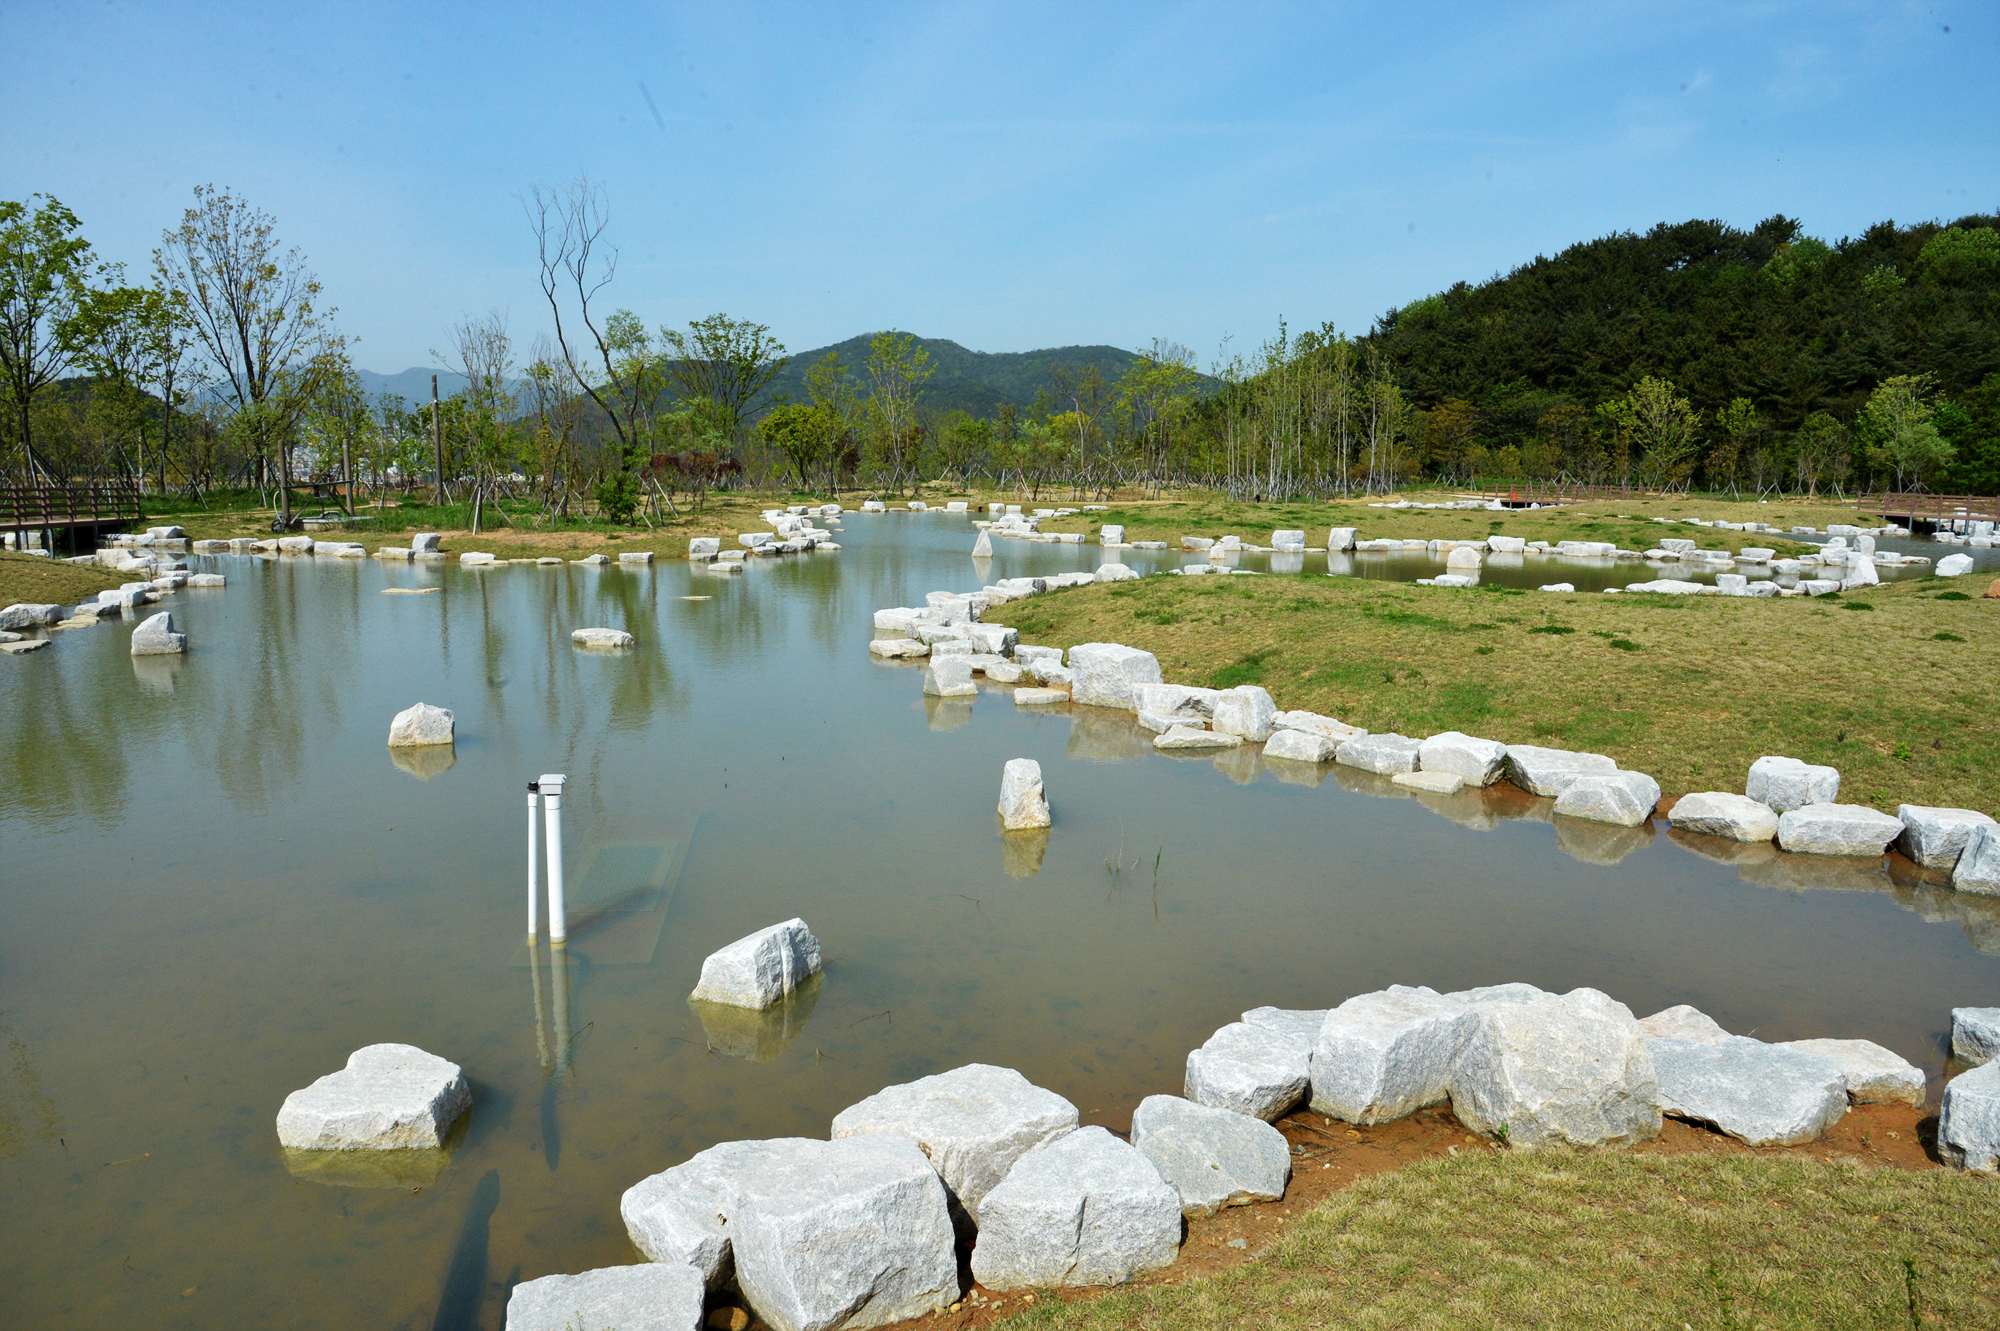 박병곤의 해운대 이야기 - 석대수목원